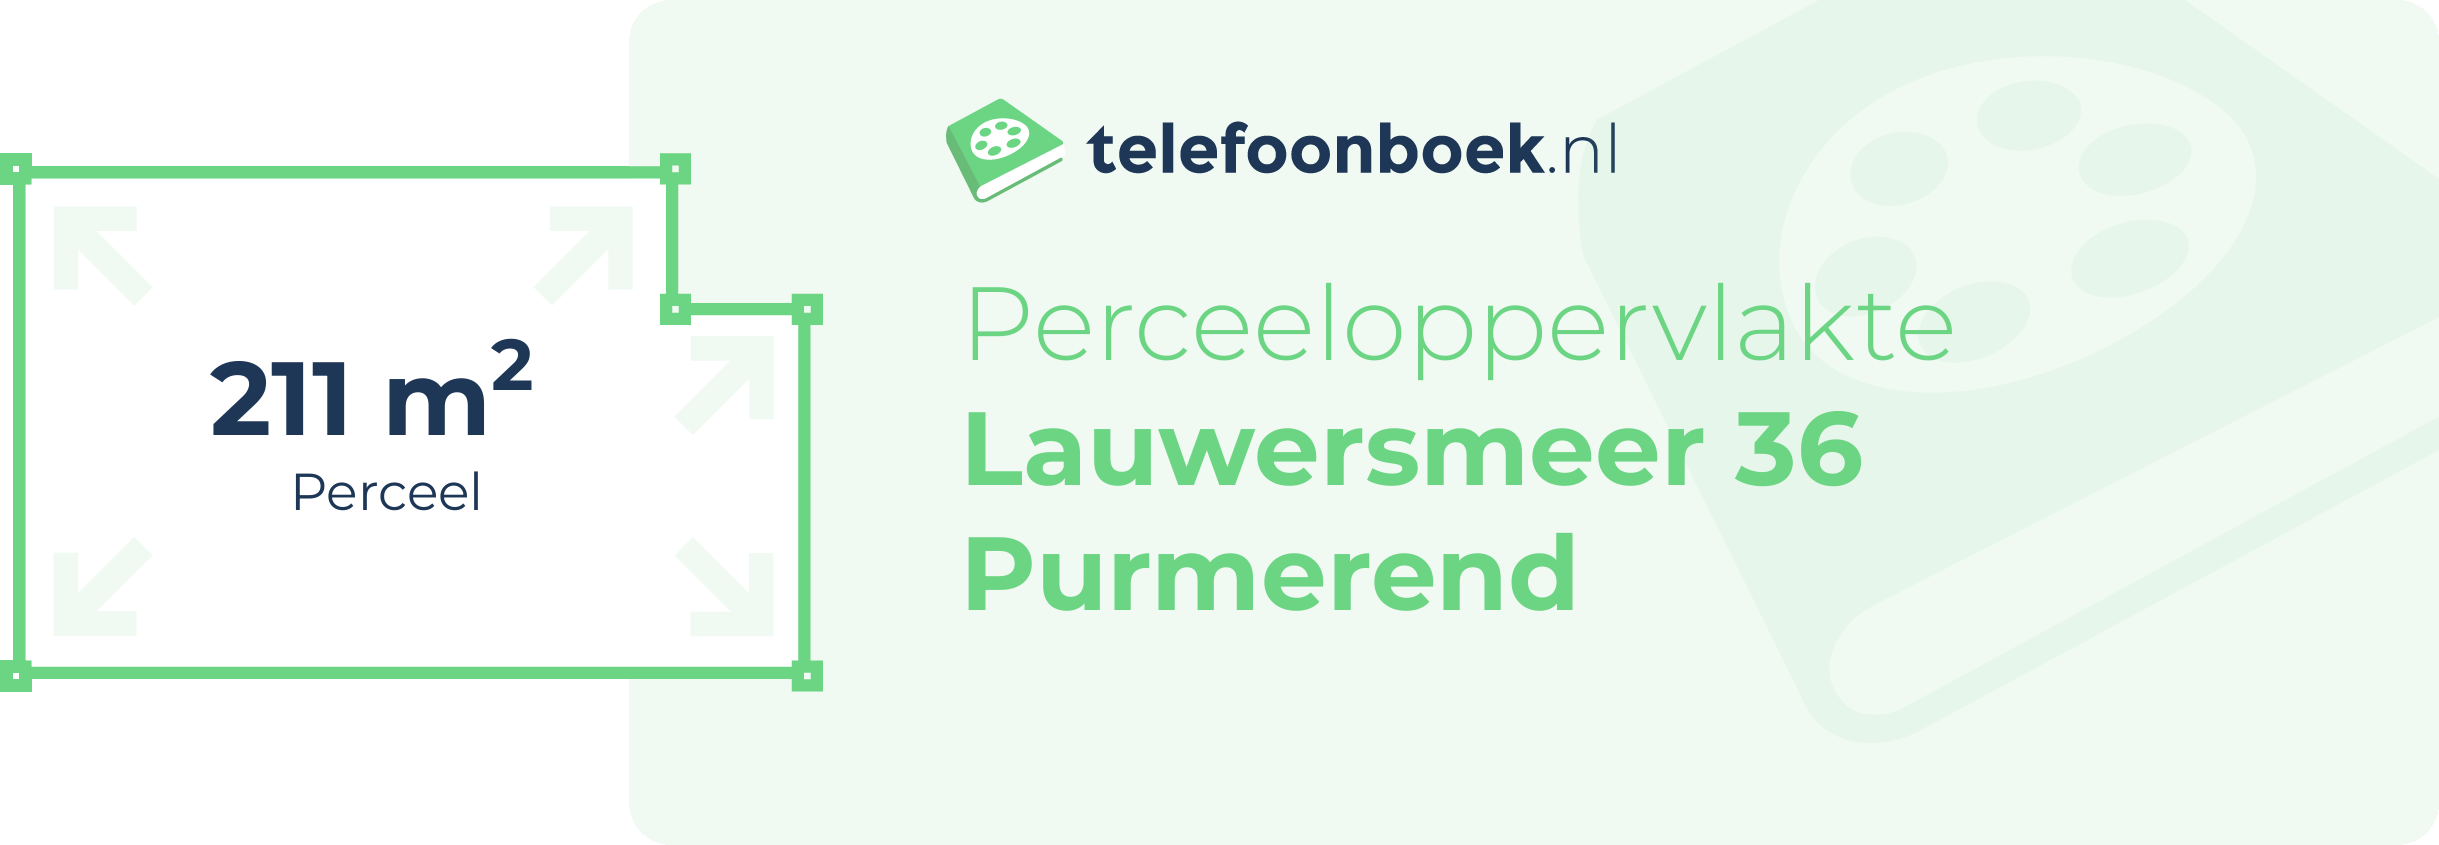 Perceeloppervlakte Lauwersmeer 36 Purmerend